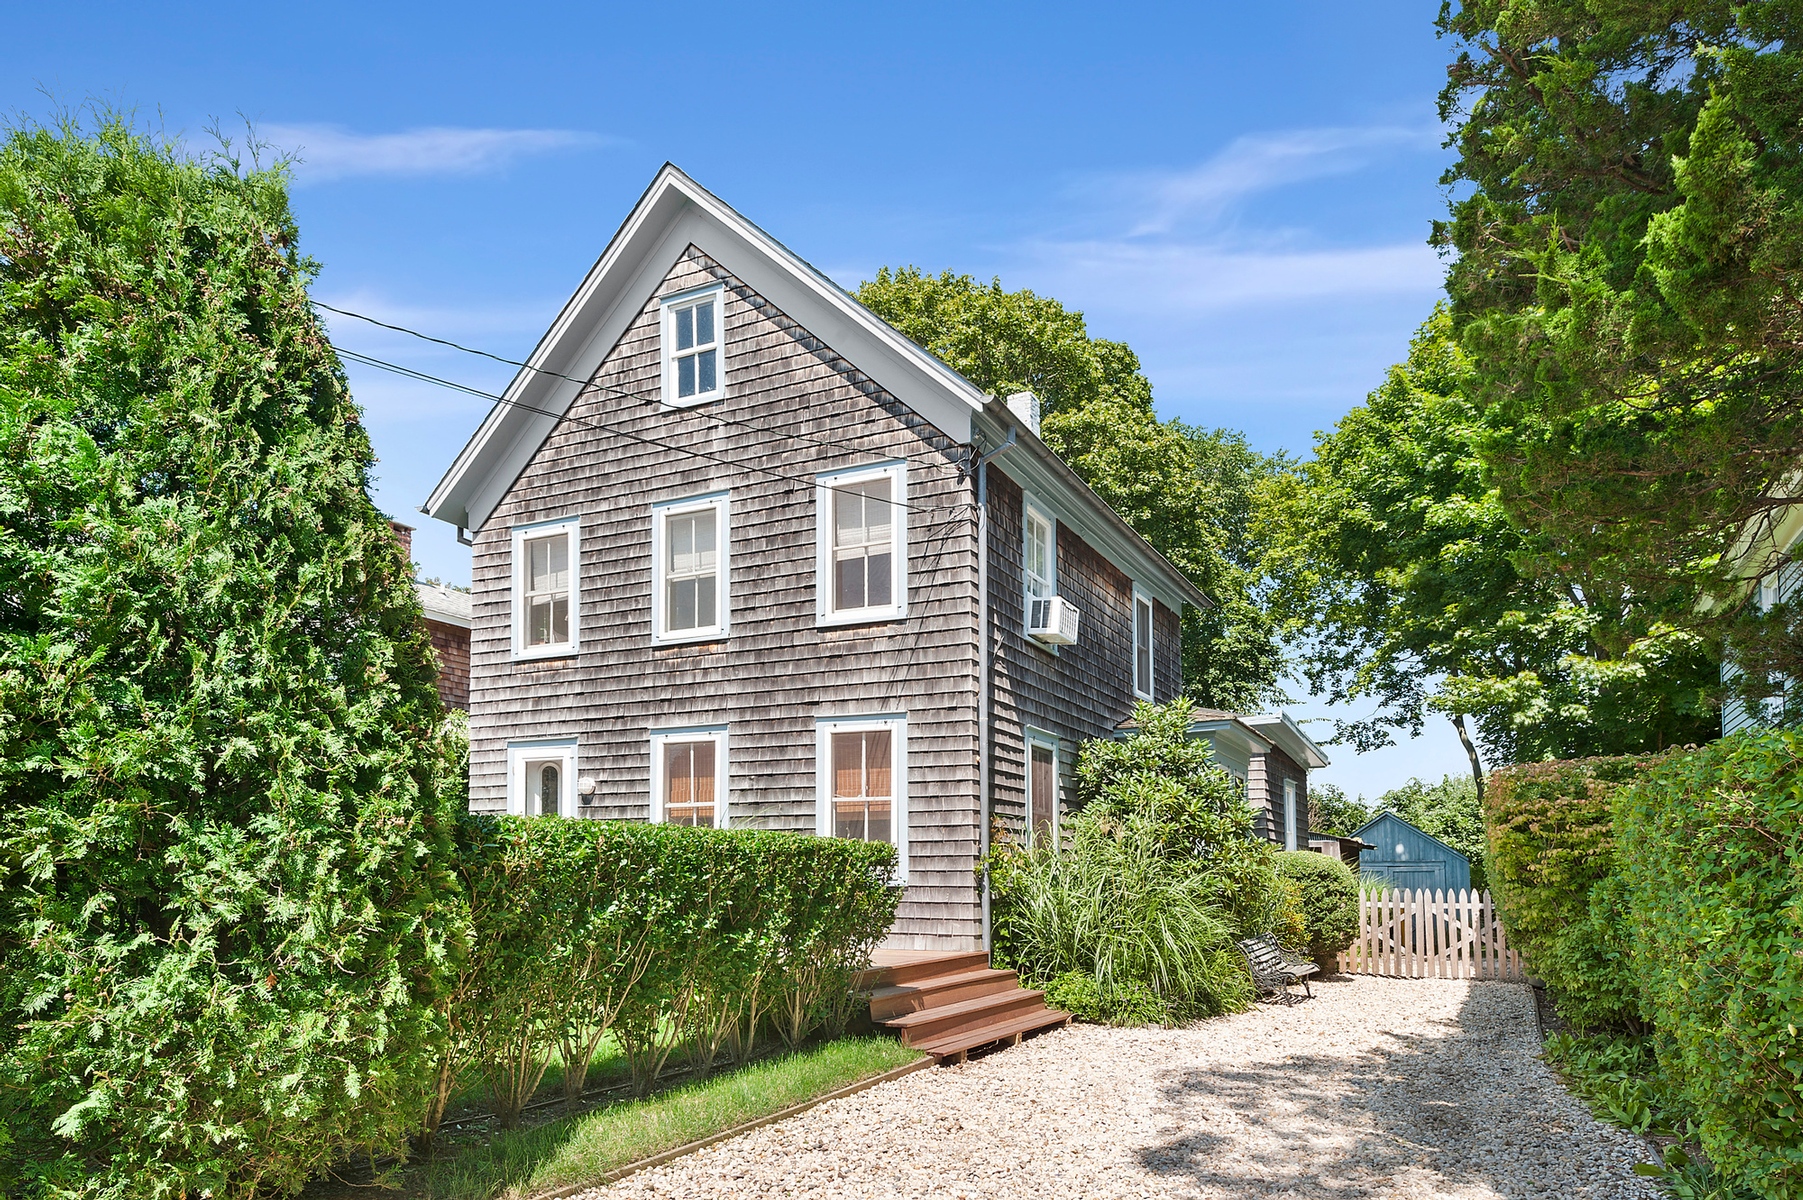 Rental Property at Village Of Sag Harbor, Village Of Sag Harbor, Hamptons, NY - Bedrooms: 3 
Bathrooms: 2  - $25,000 MO.